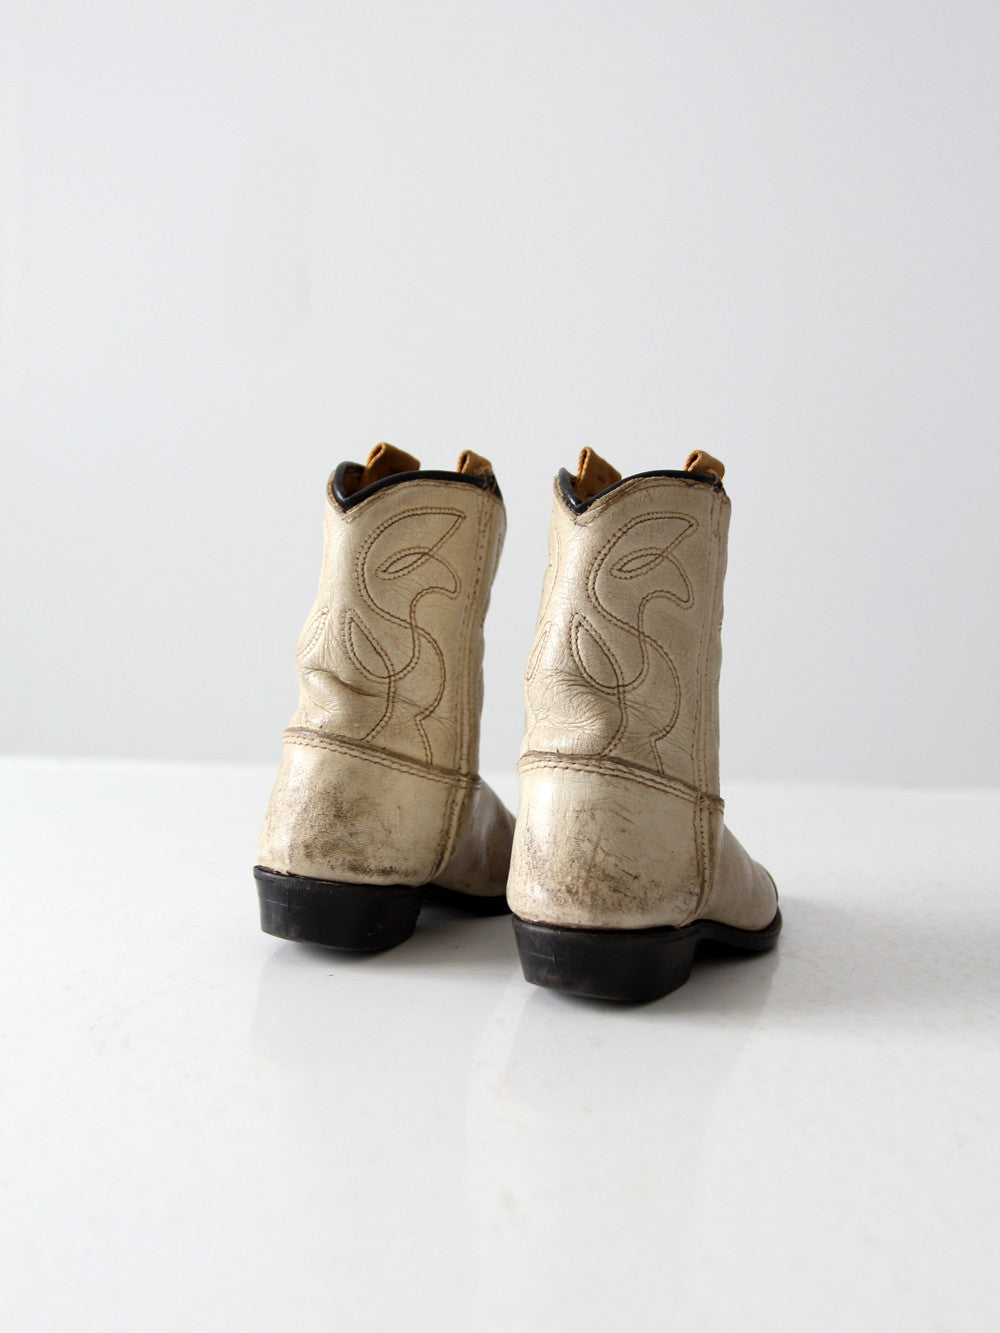 vintage children's cowboy boots